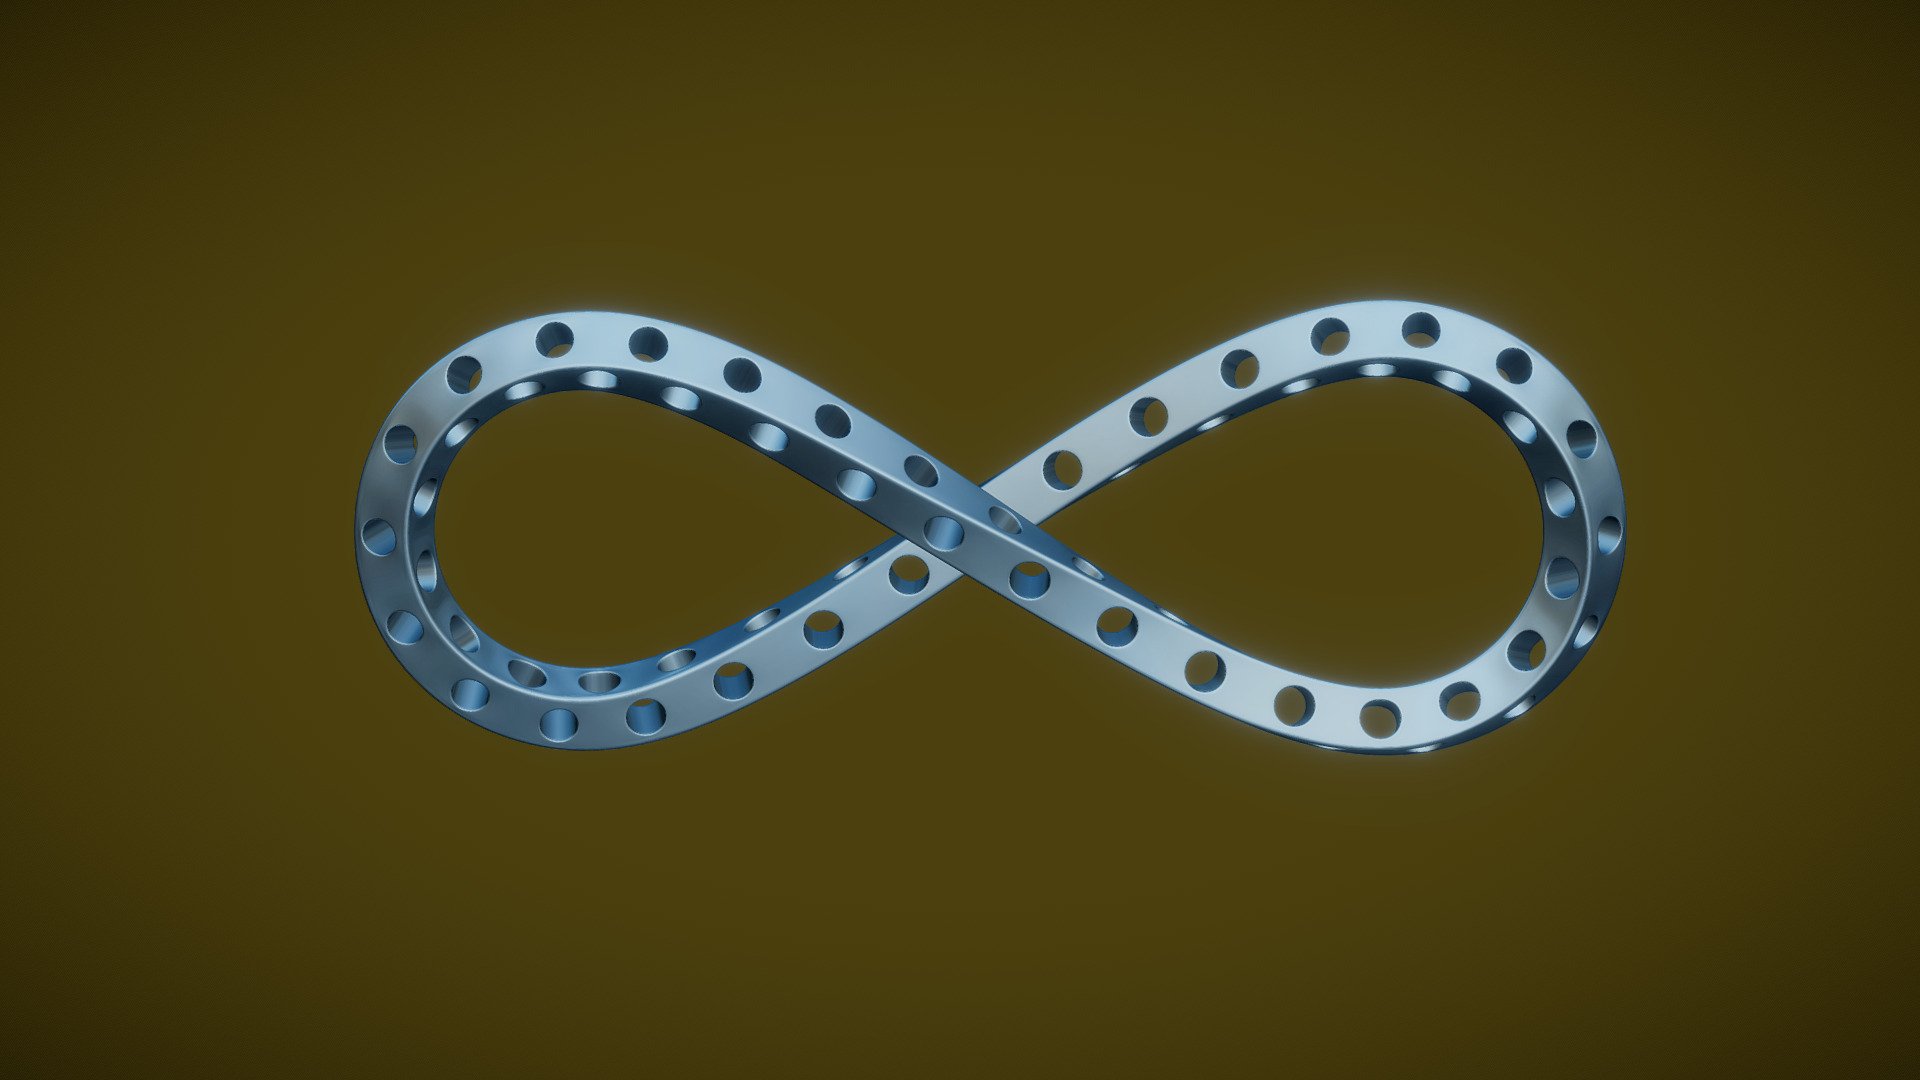 Infinity Loop Perforated